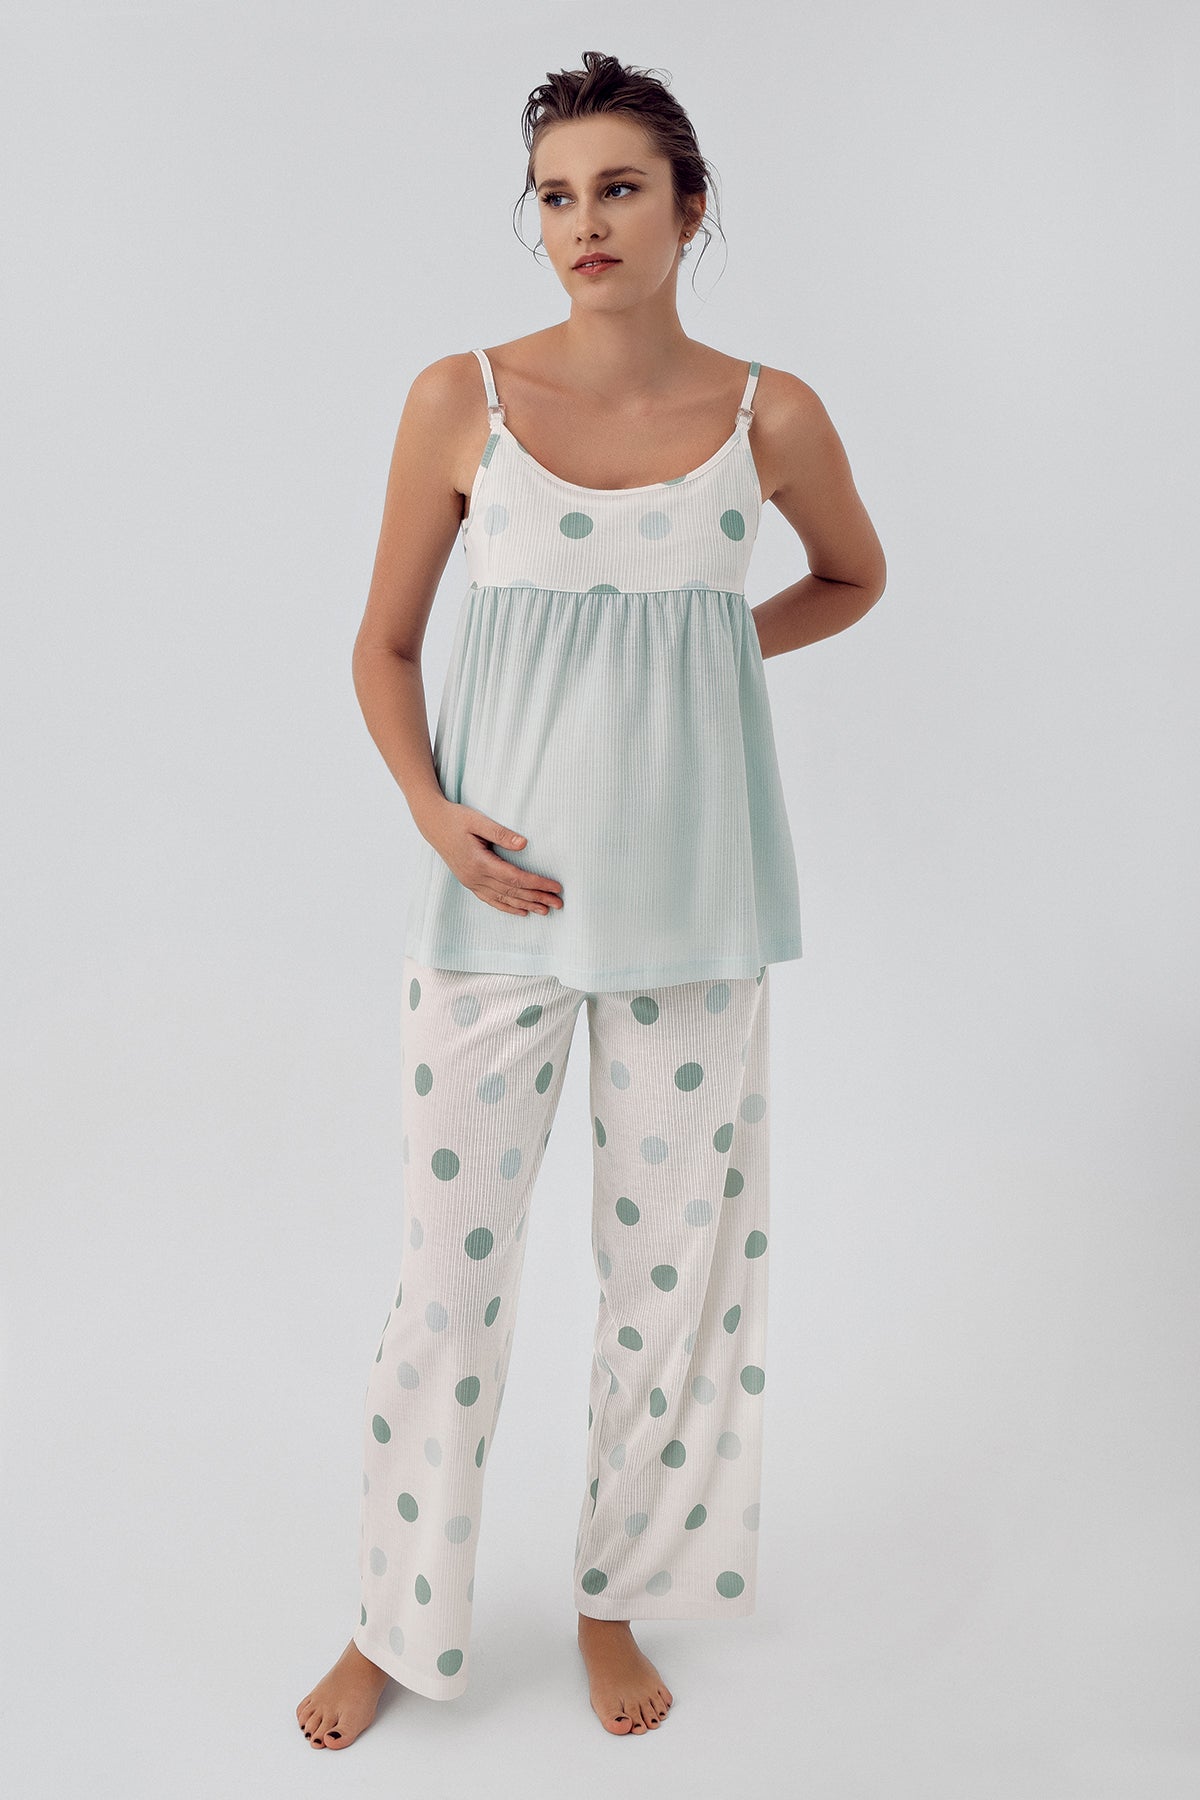 Shopymommy 16201 Polka Dot Strap Maternity & Nursing Pajamas Green